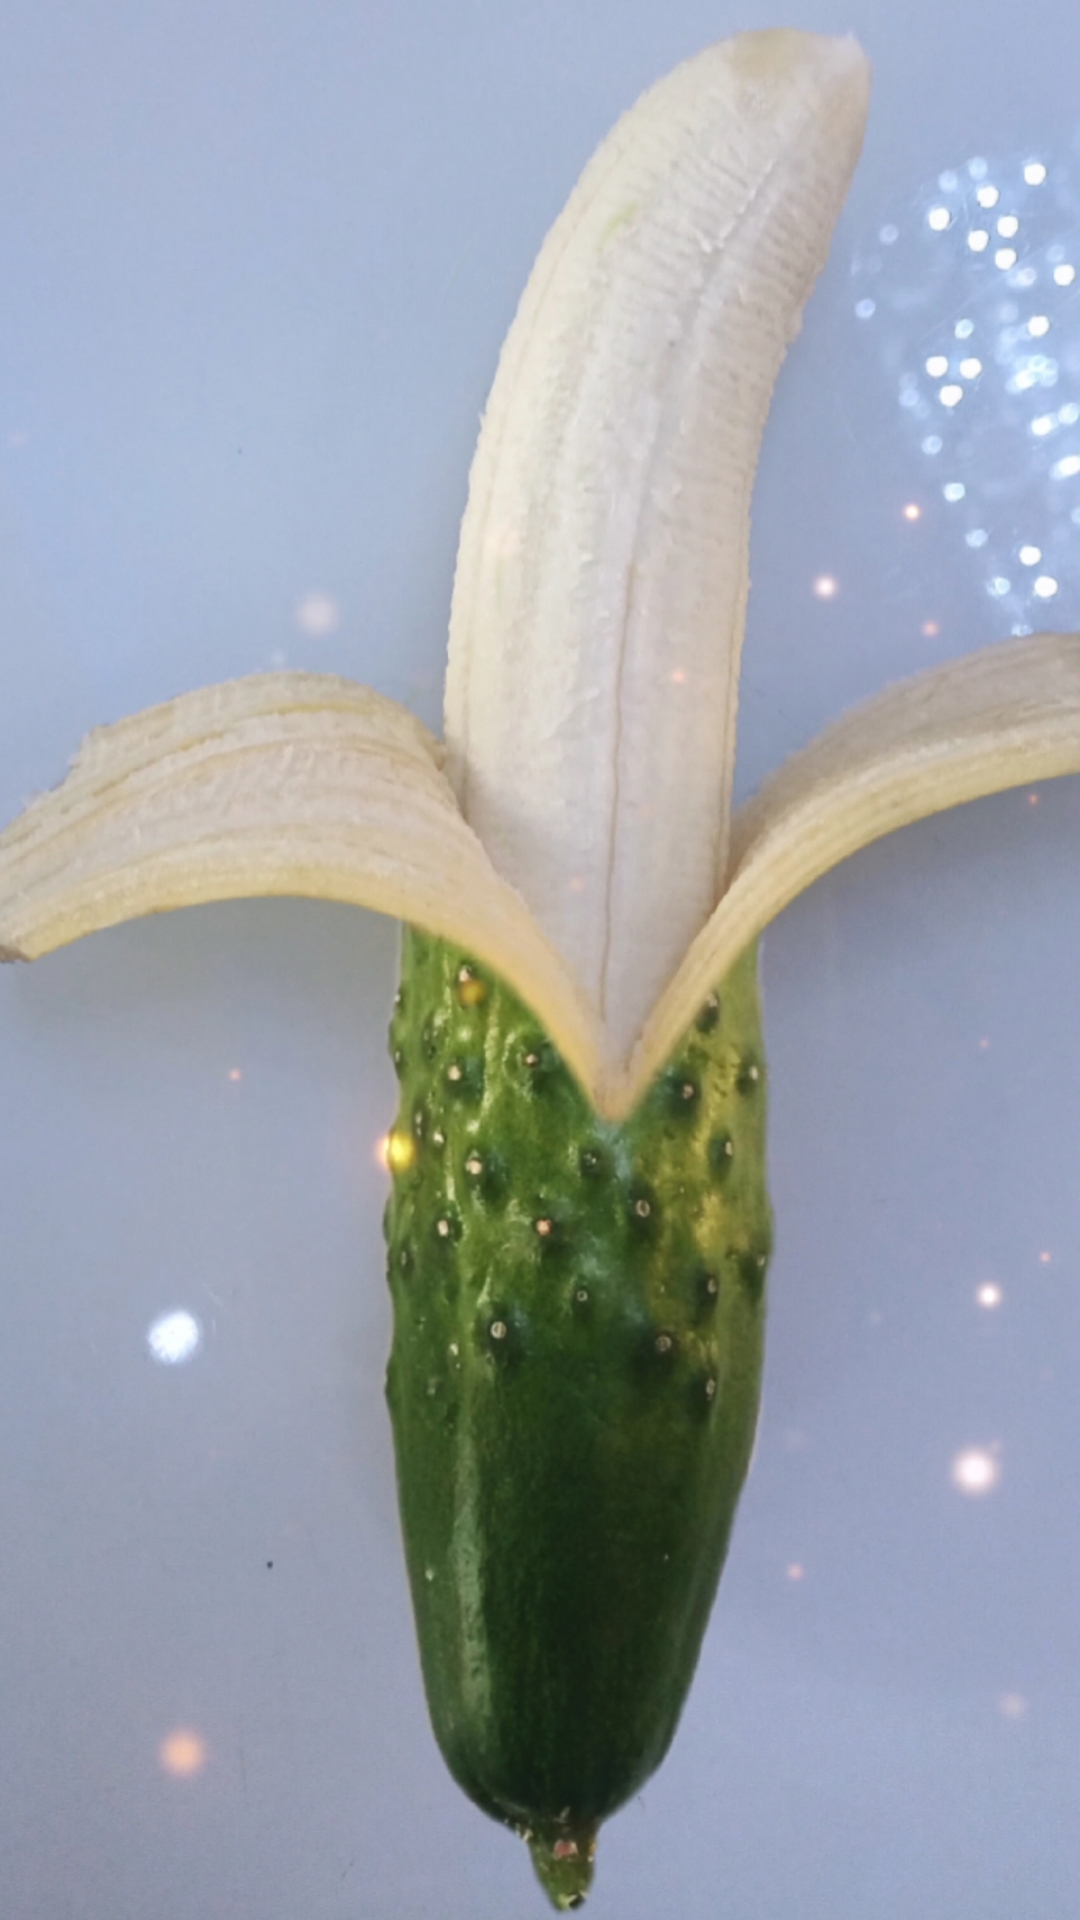 绿皮香蕉像黄瓜的图片图片